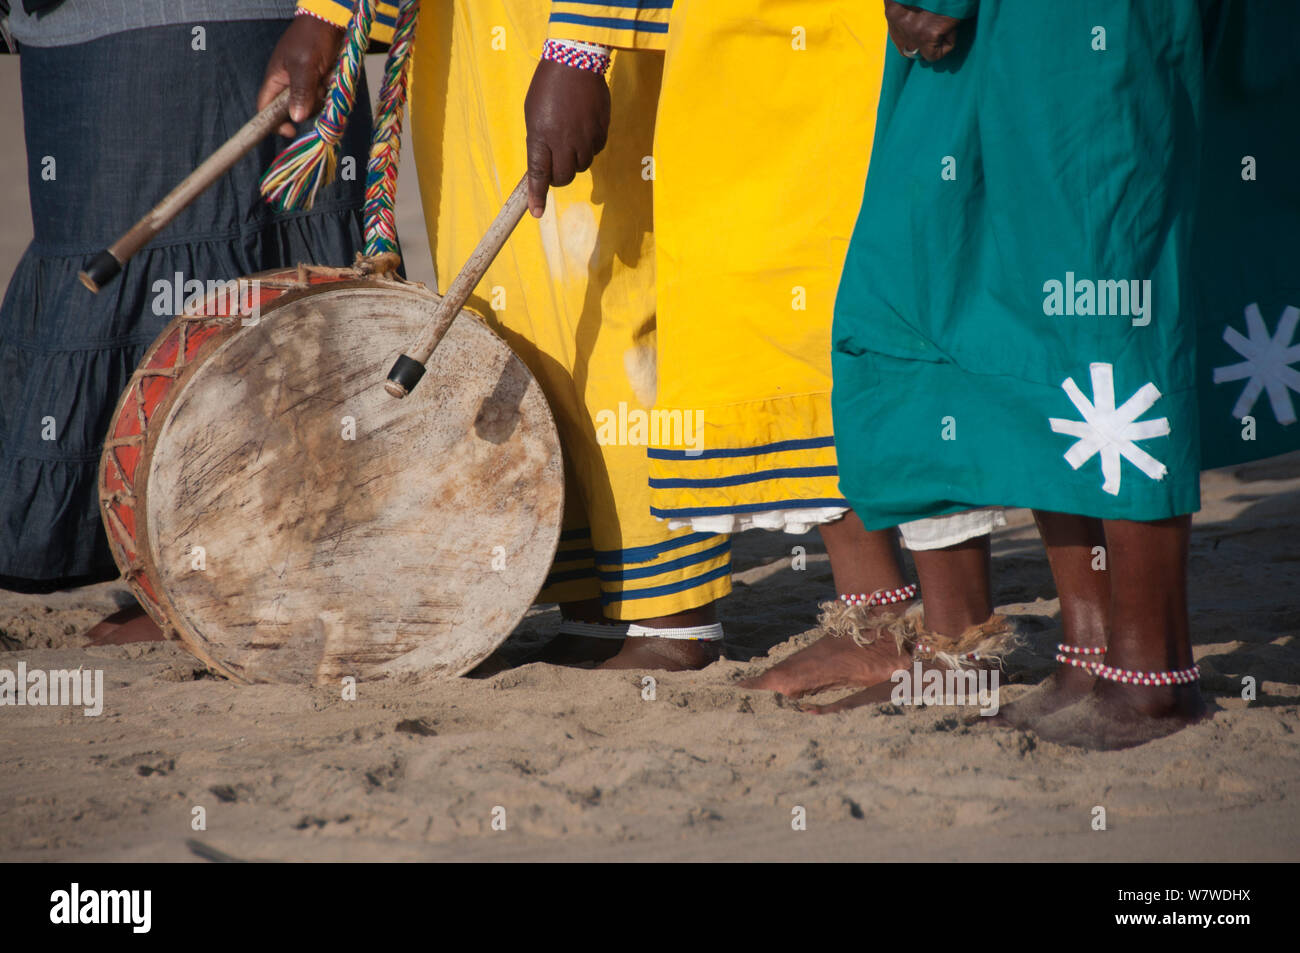 Trommel auf Masse durch eine traditionelle Heiler während am frühen Morgen Taufe gespielt wird, Strand von Durban, KwaZulu Natal, Südafrika, August 2009. Stockfoto